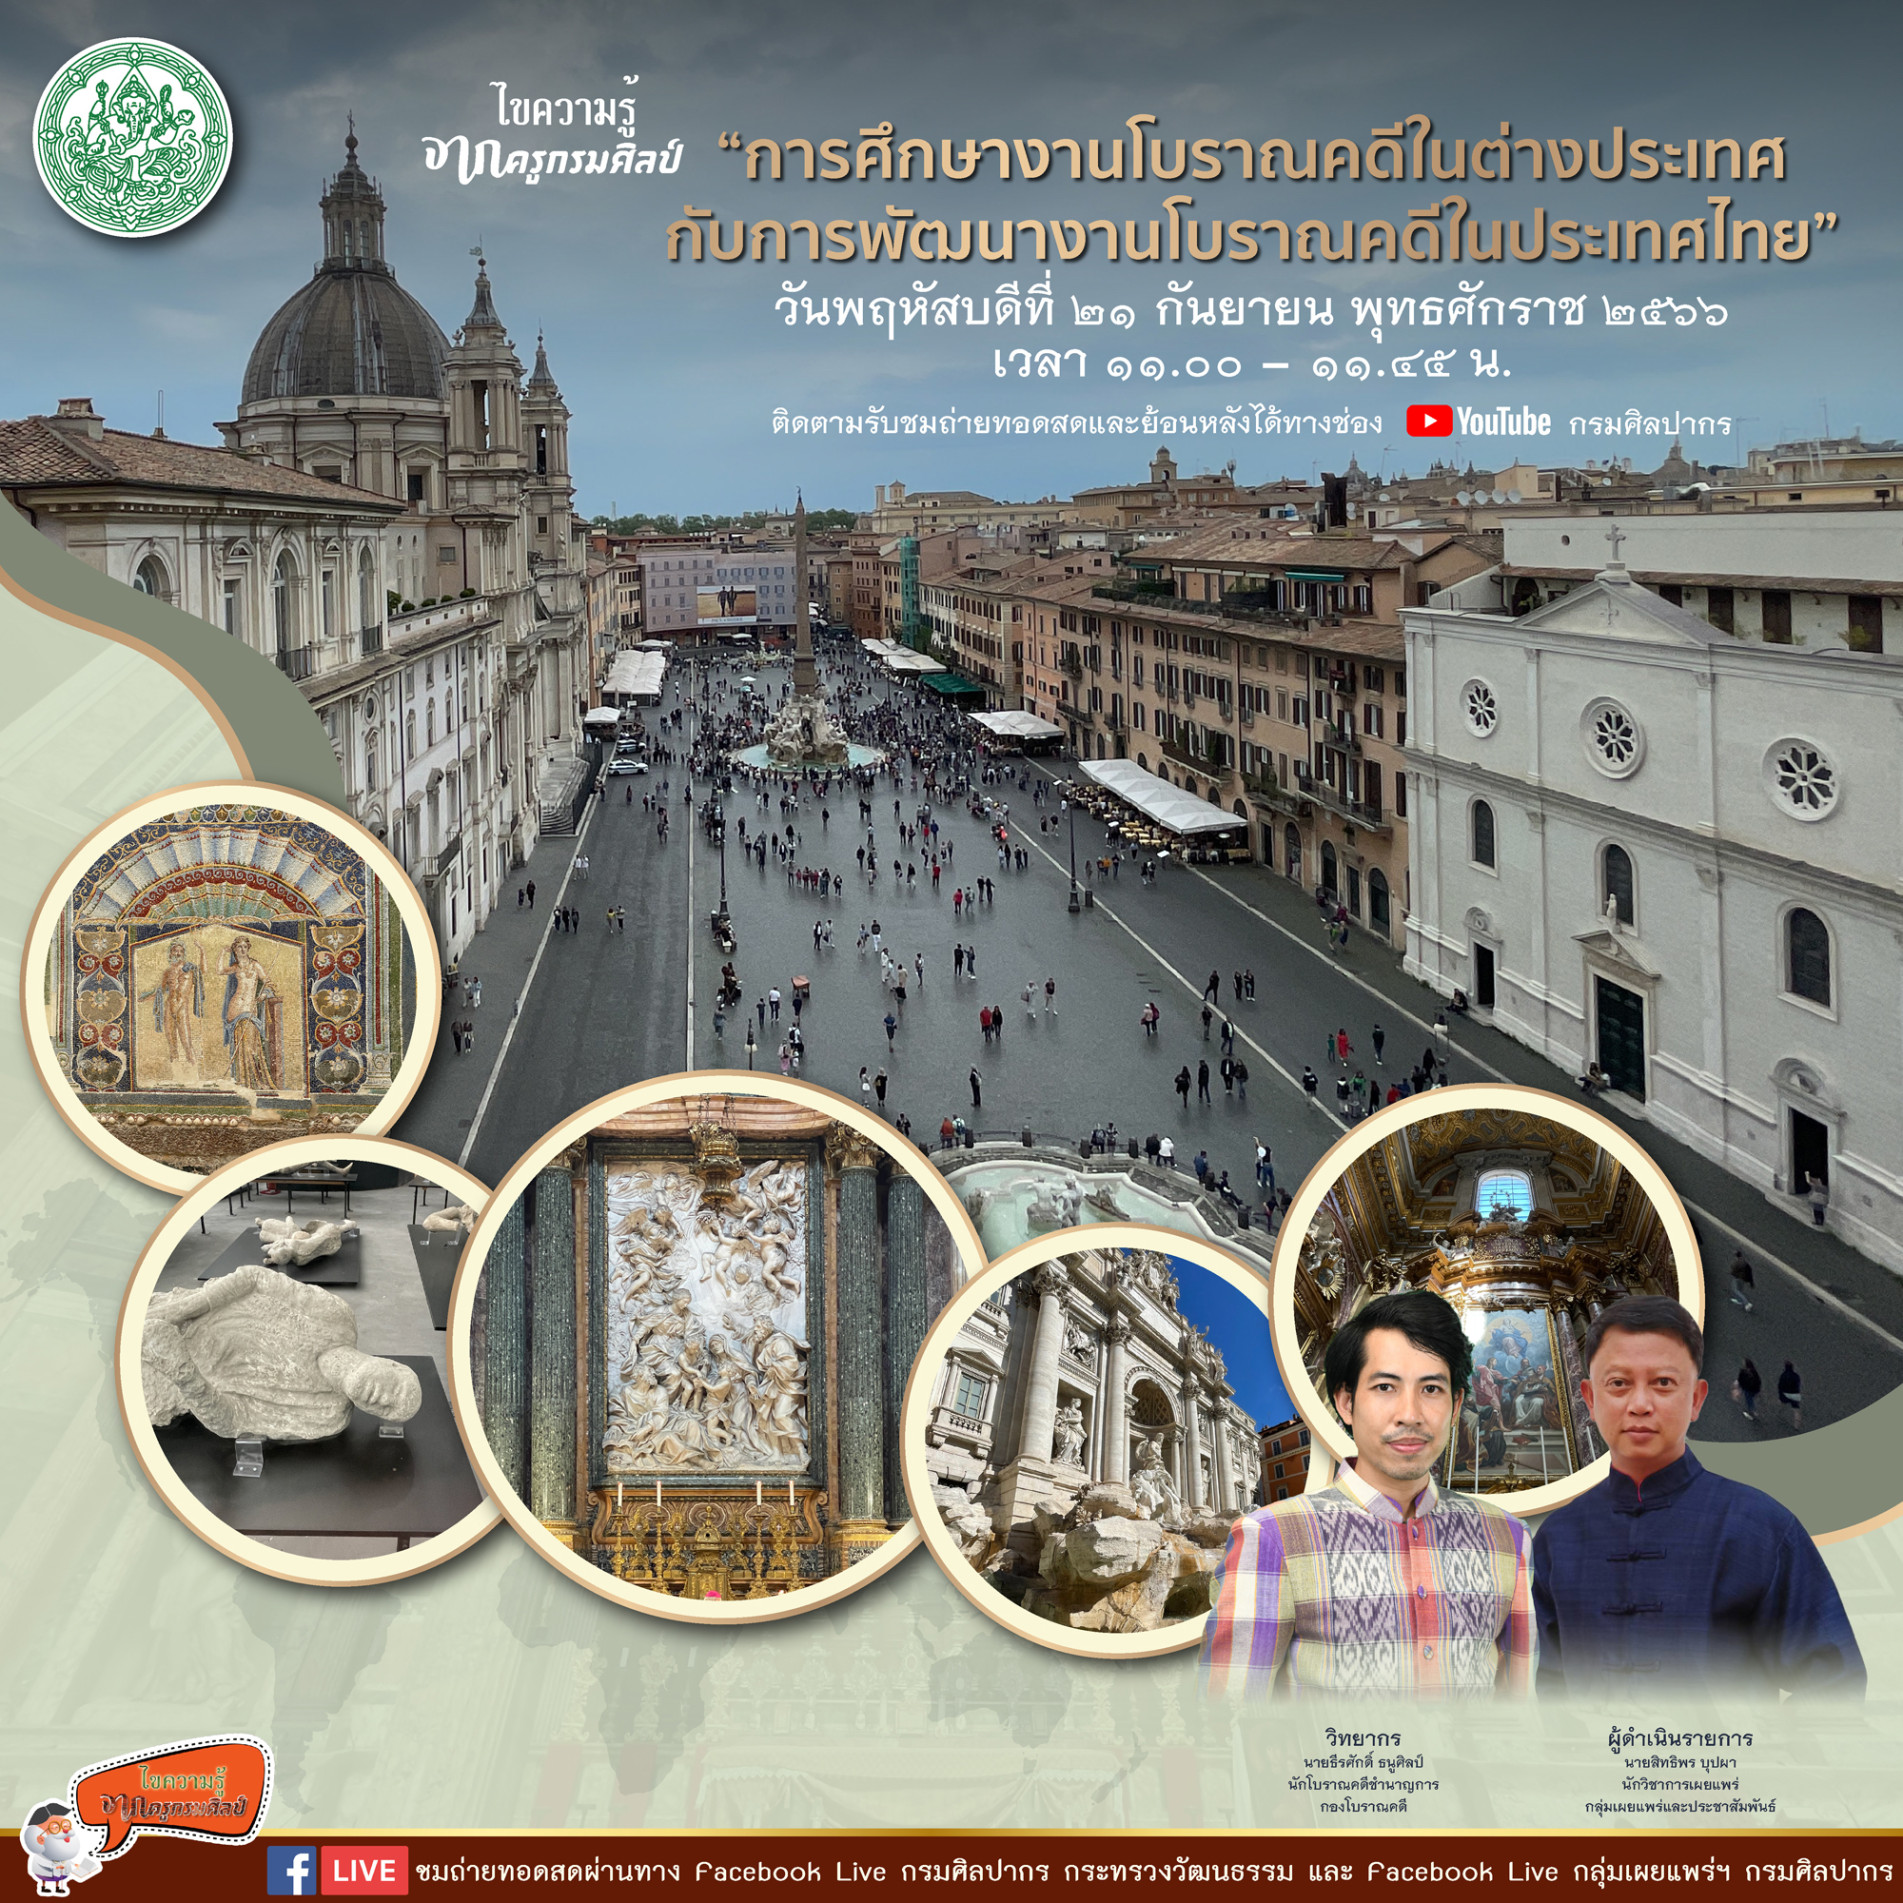 ขอเชิญชม Facebook Live รายการไขความรู้จากครูกรมศิลป์ “การศึกษางานโบราณคดีในต่างประเทศกับการพัฒนางานโบราณคดีในประเทศไทย”